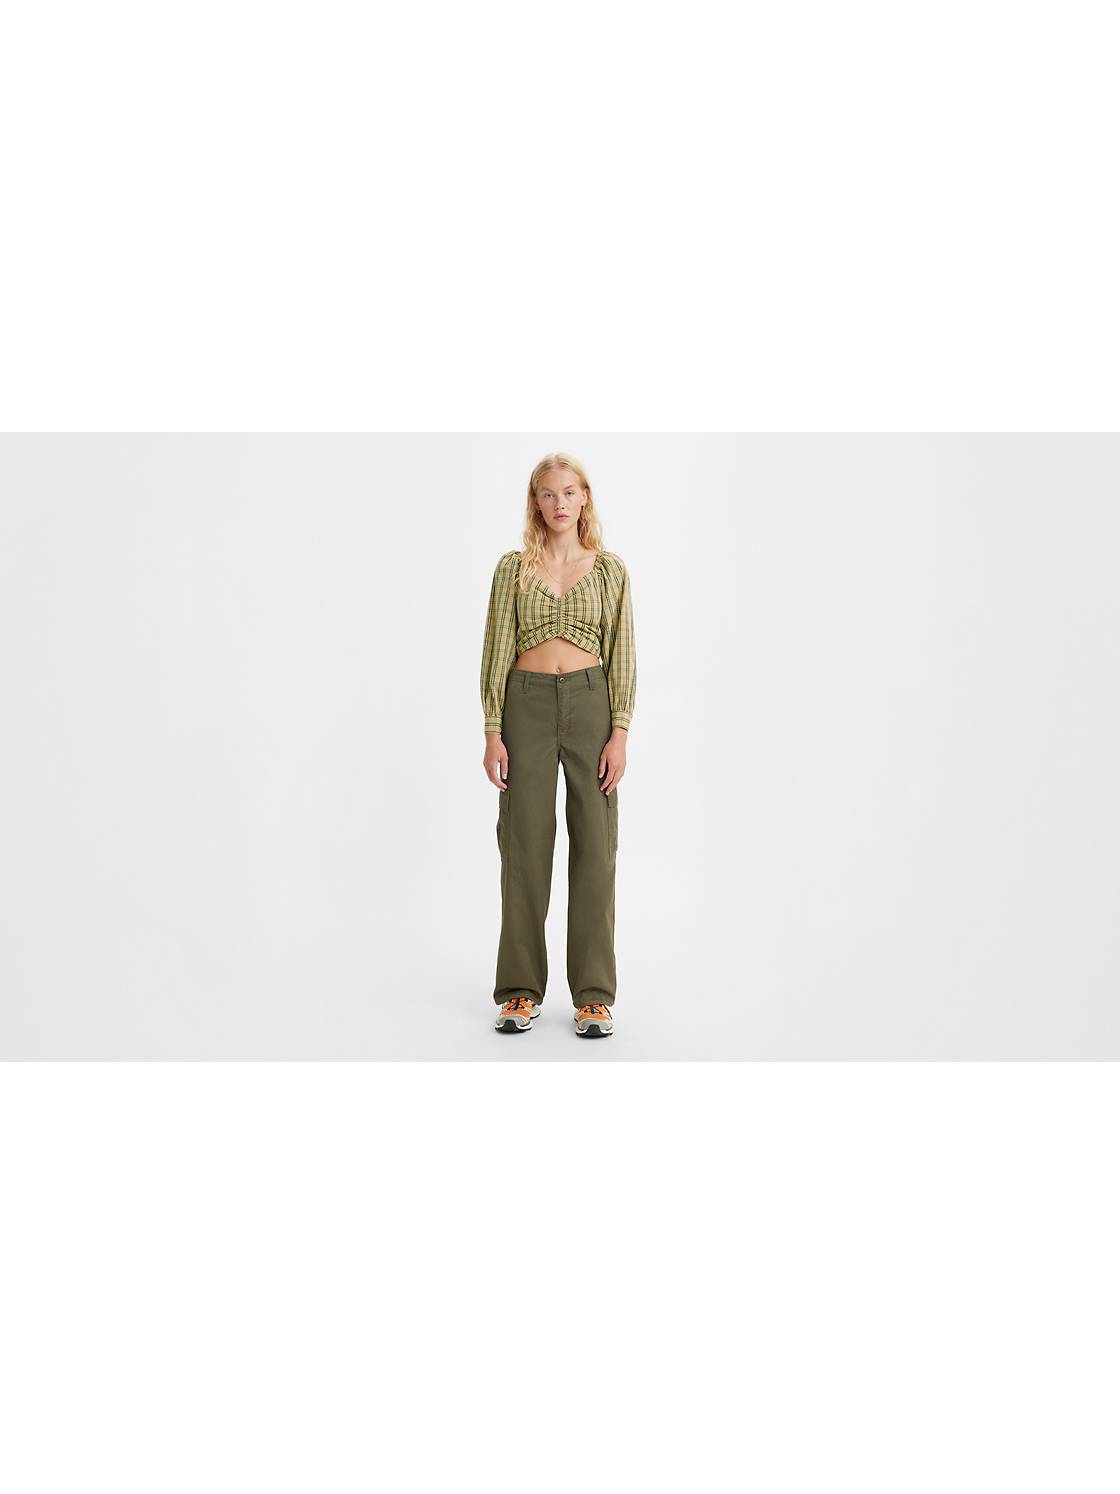 Women's Green Cargo Pants On Sale